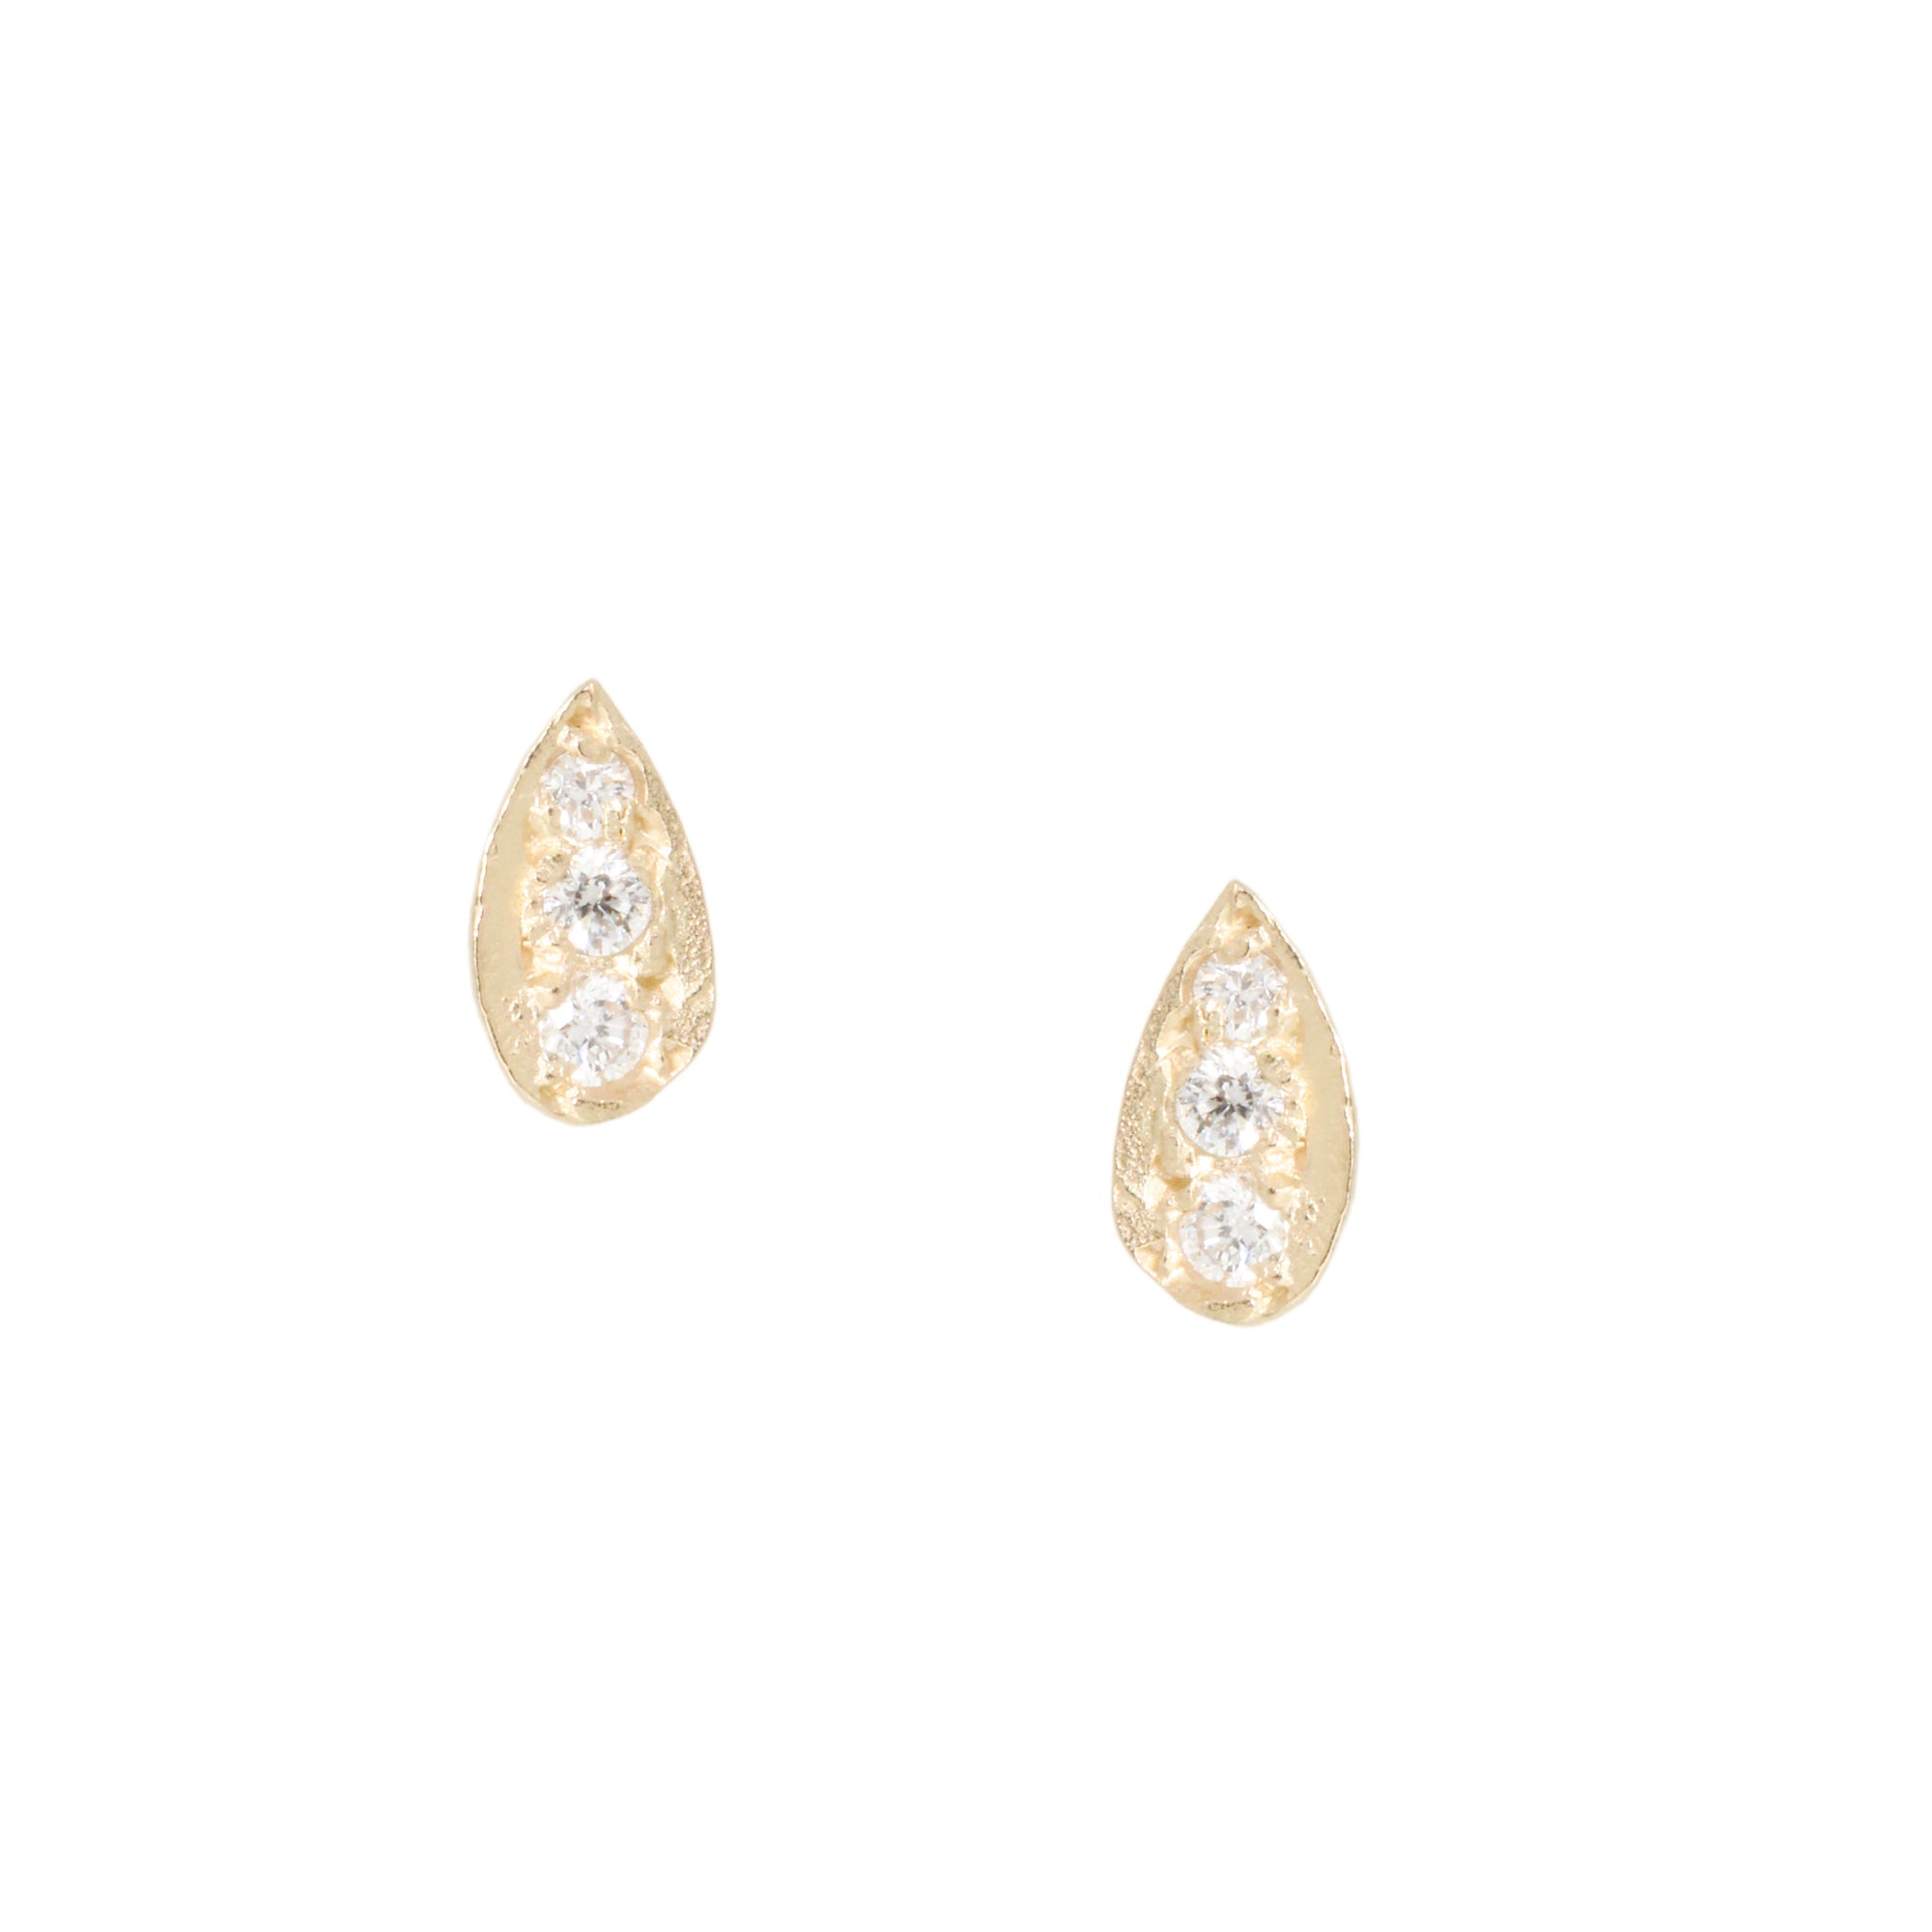 Medium Leaf Diamond Stud Earrings